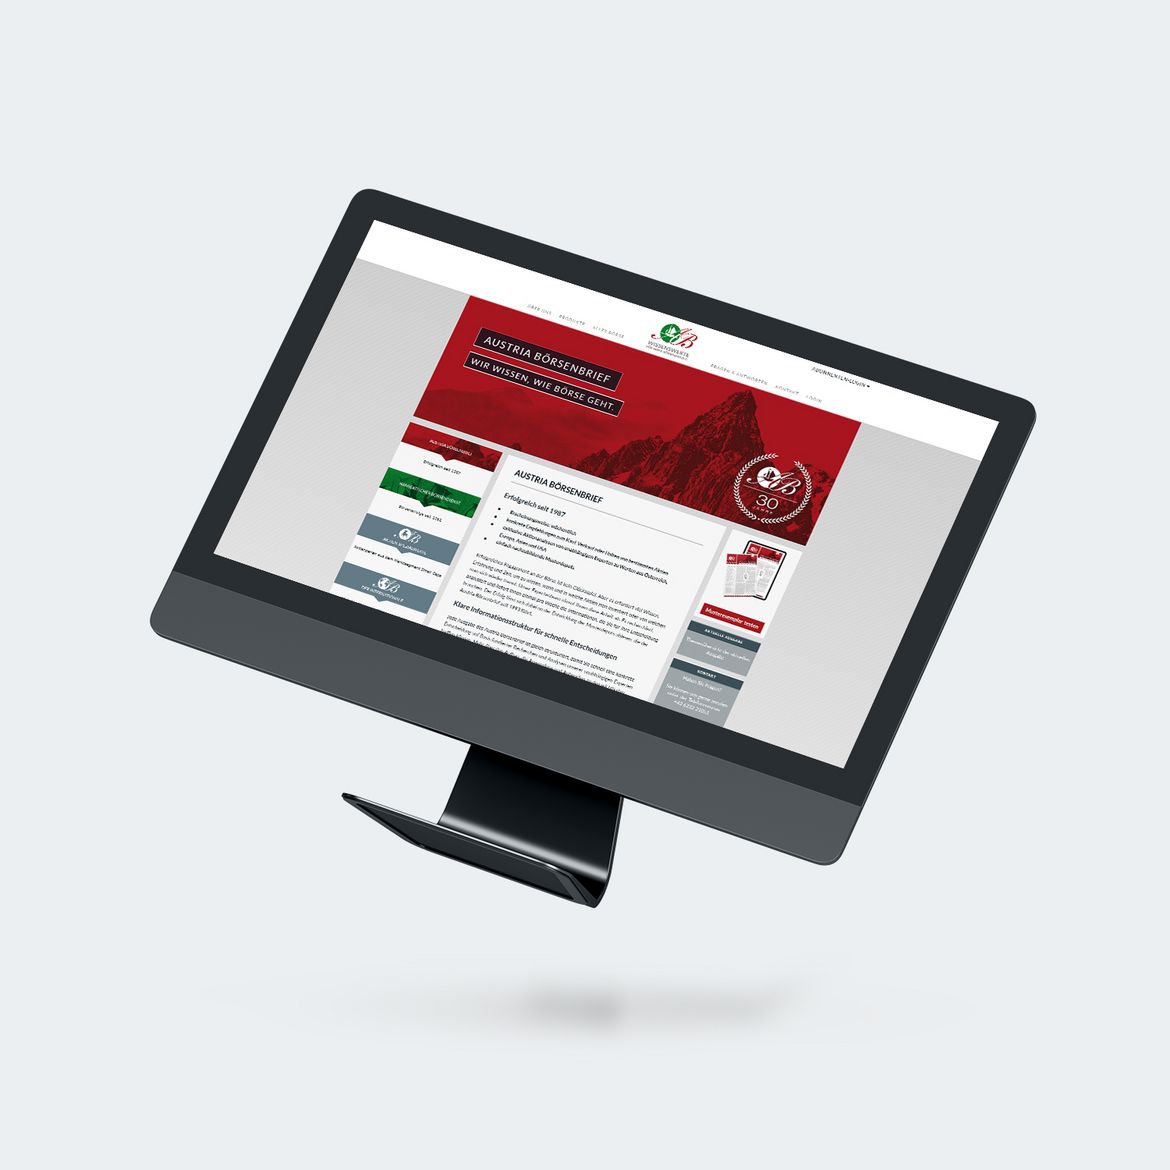 Darstellung der neuen Website von boersenbrief.at auf einem iMac